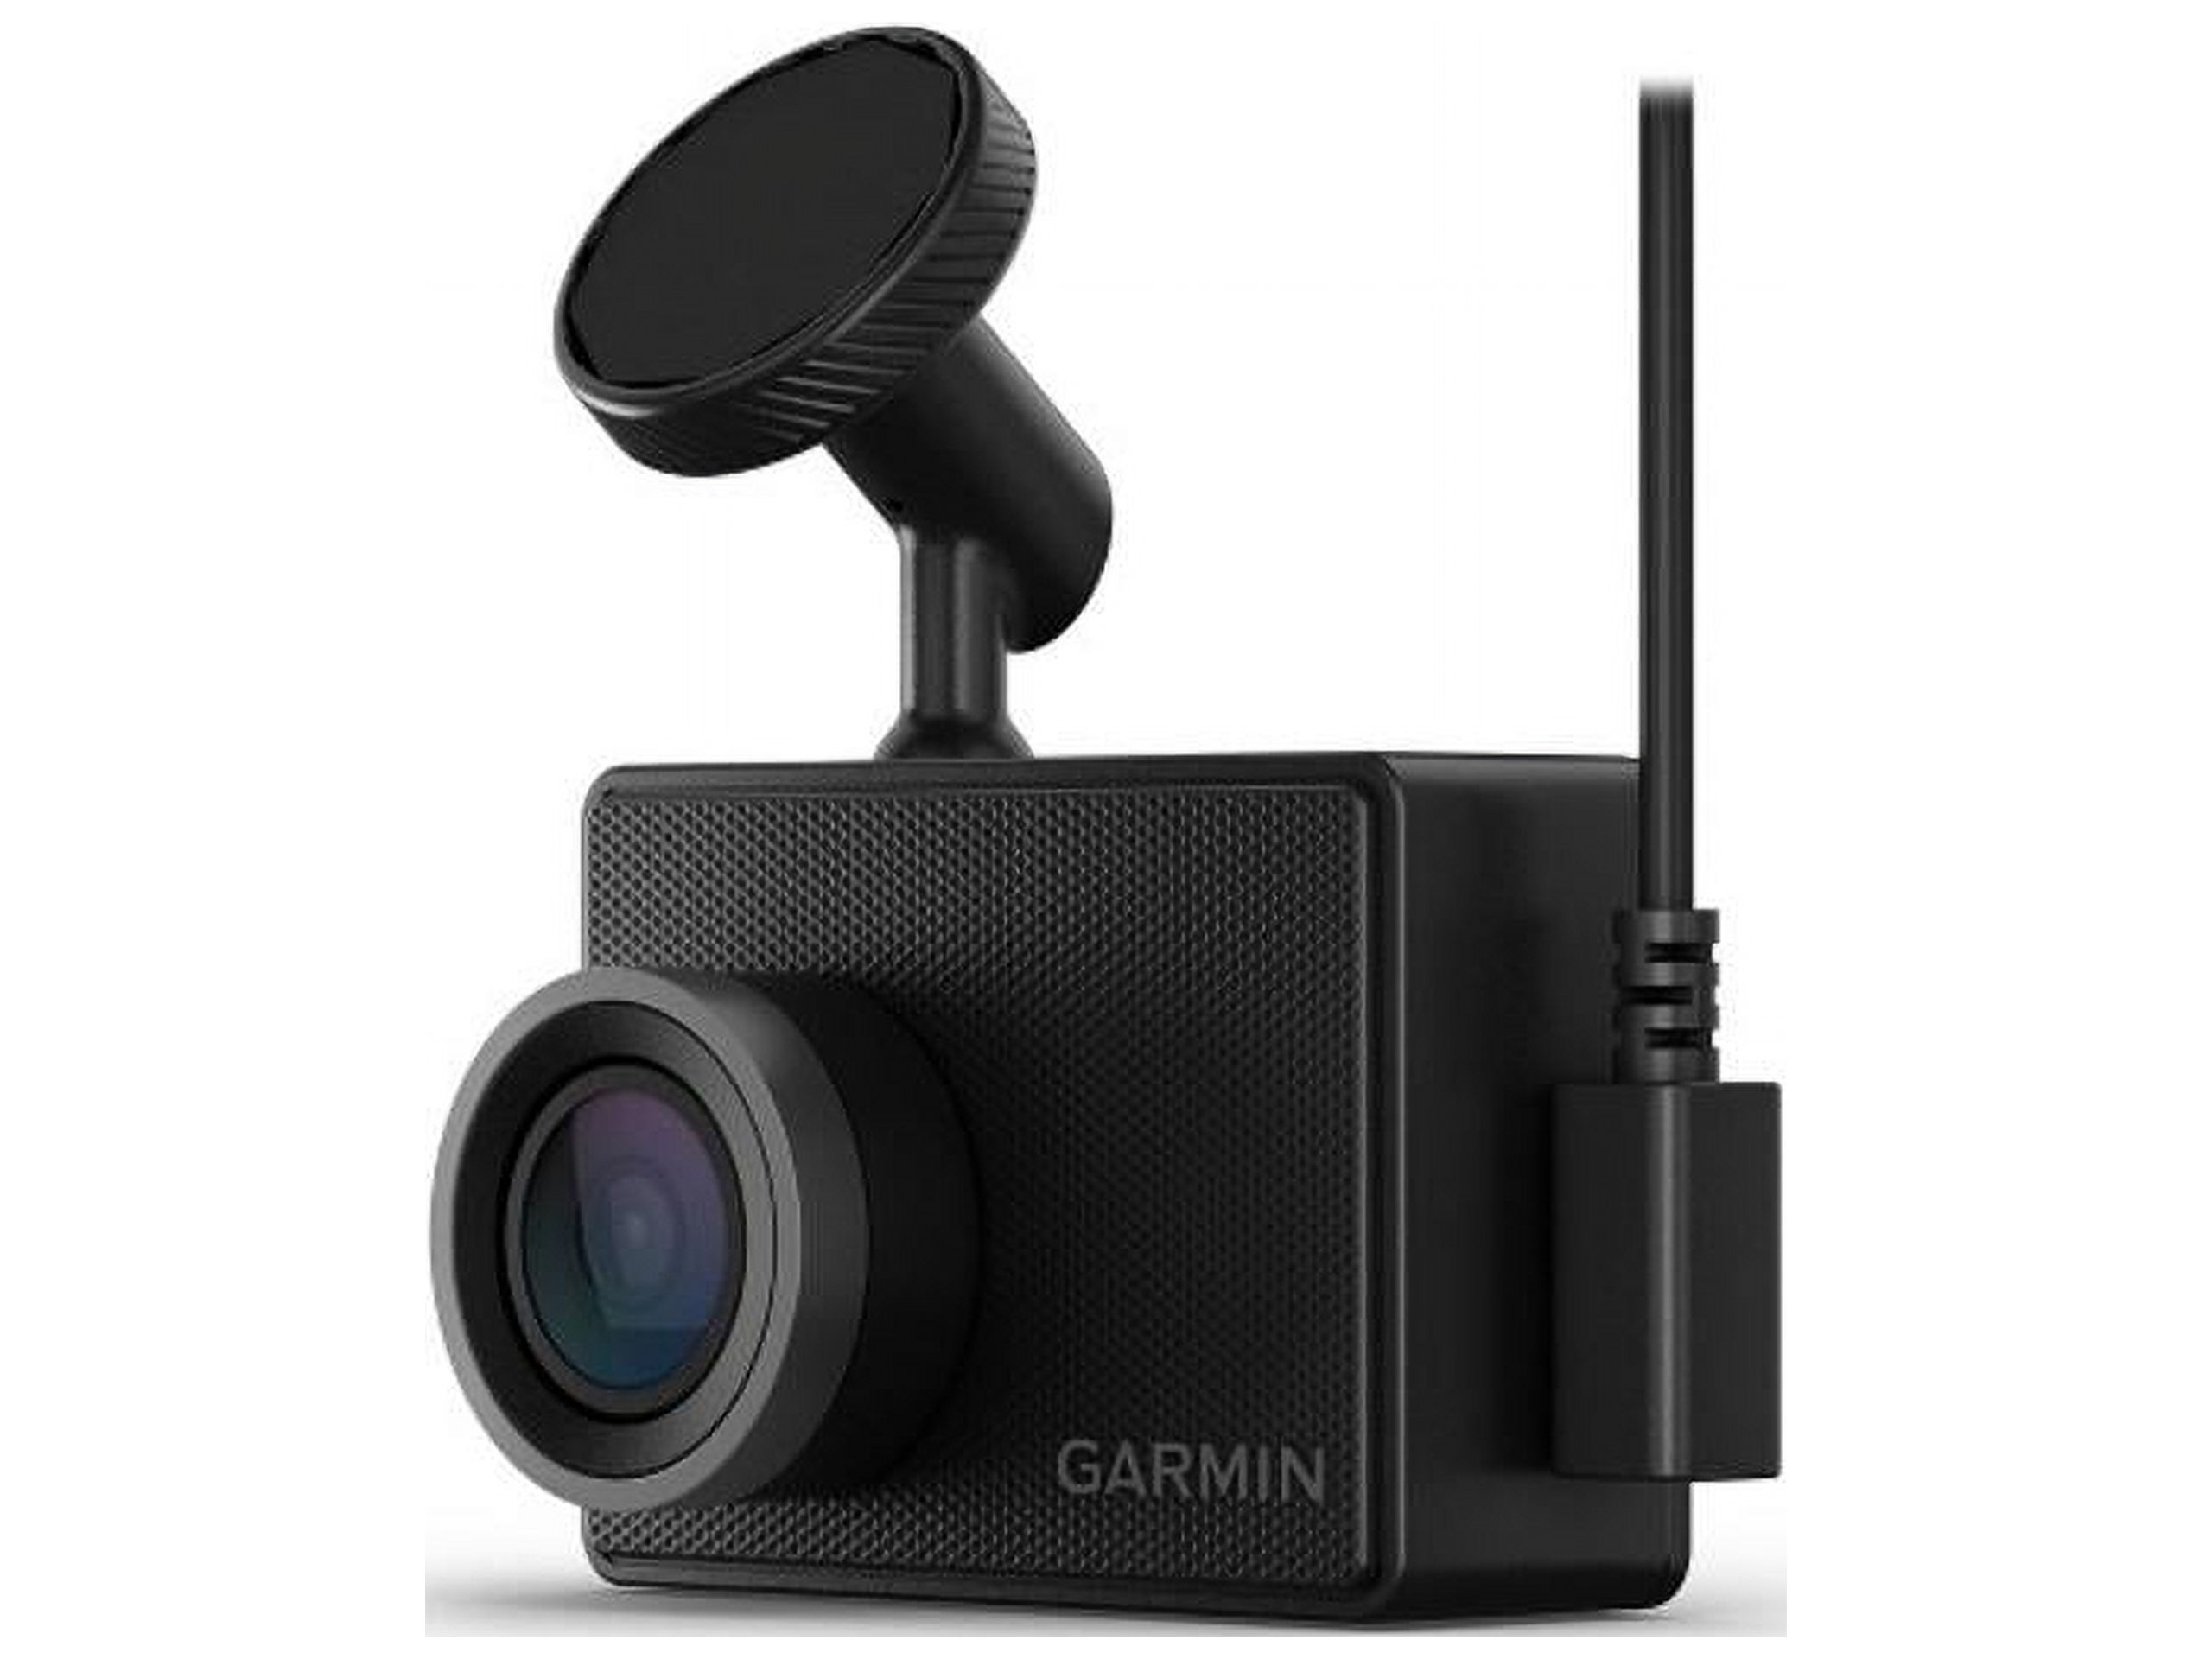 Garmin 47 1080p Dash Cam, Black #010-02505-00 - image 1 of 20